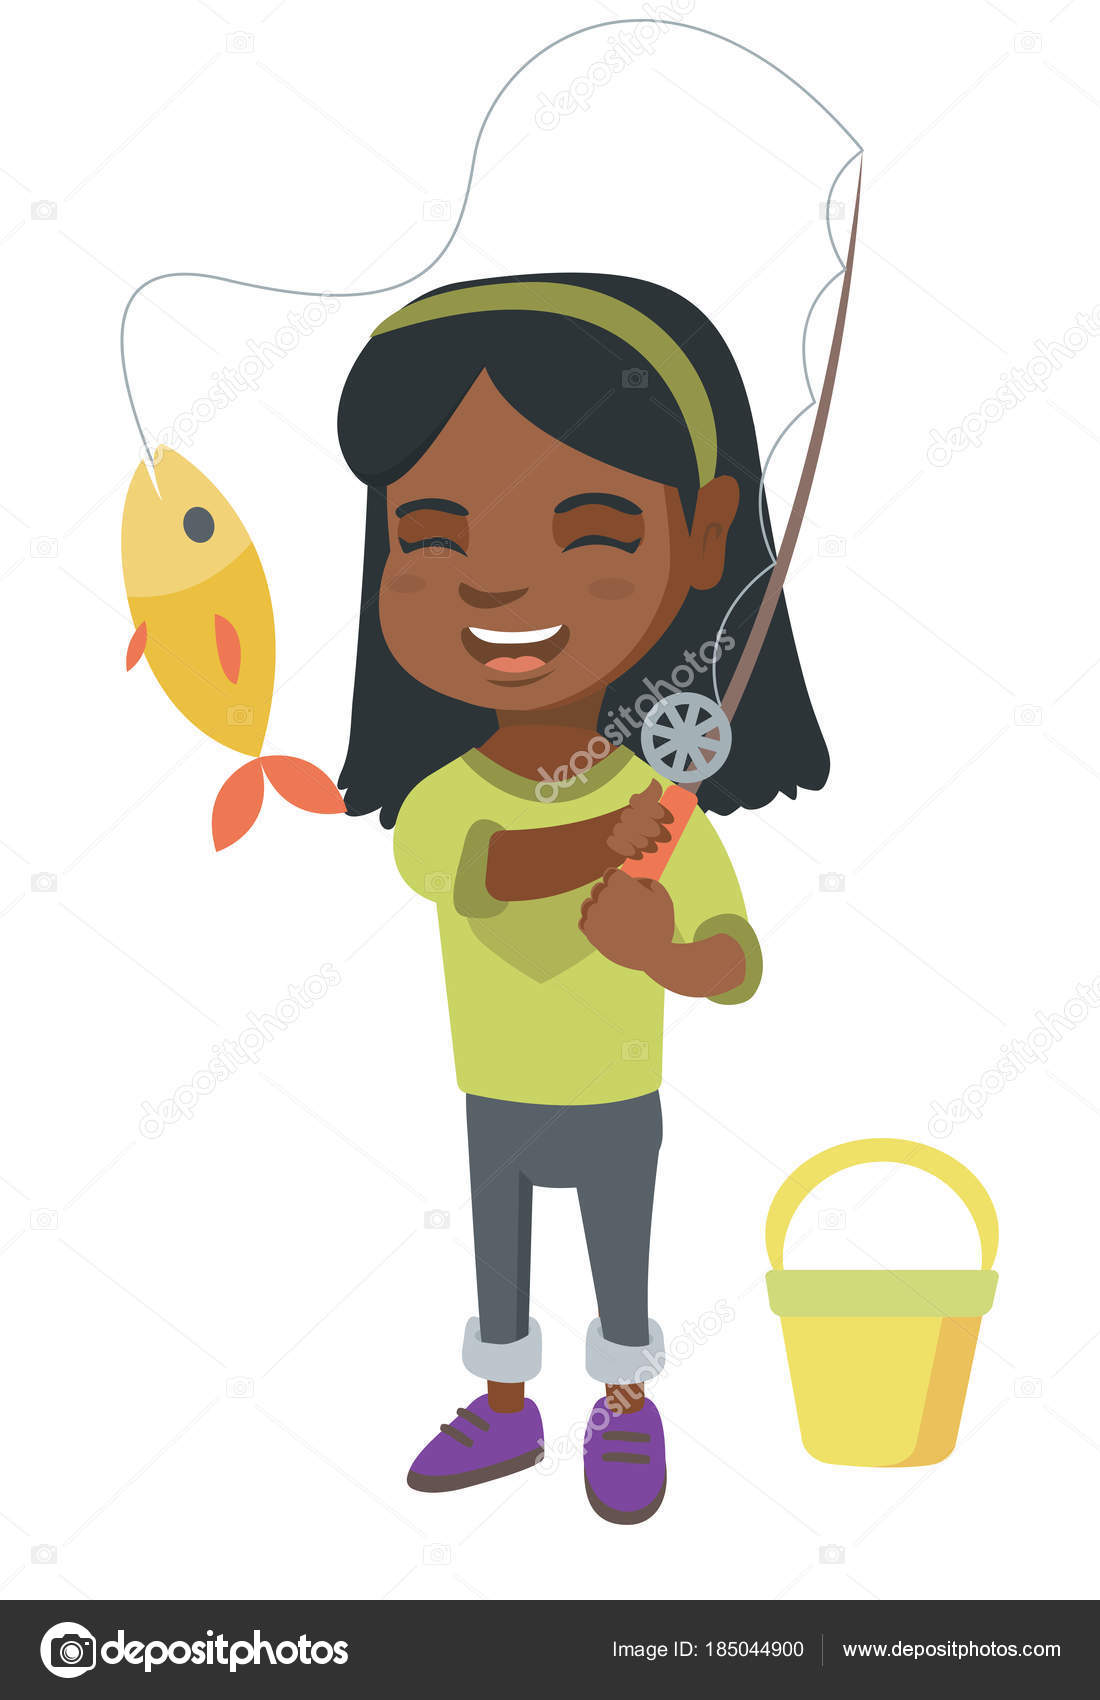 https://st3.depositphotos.com/1001599/18504/v/1600/depositphotos_185044900-stock-illustration-little-girl-holding-fishing-rod.jpg